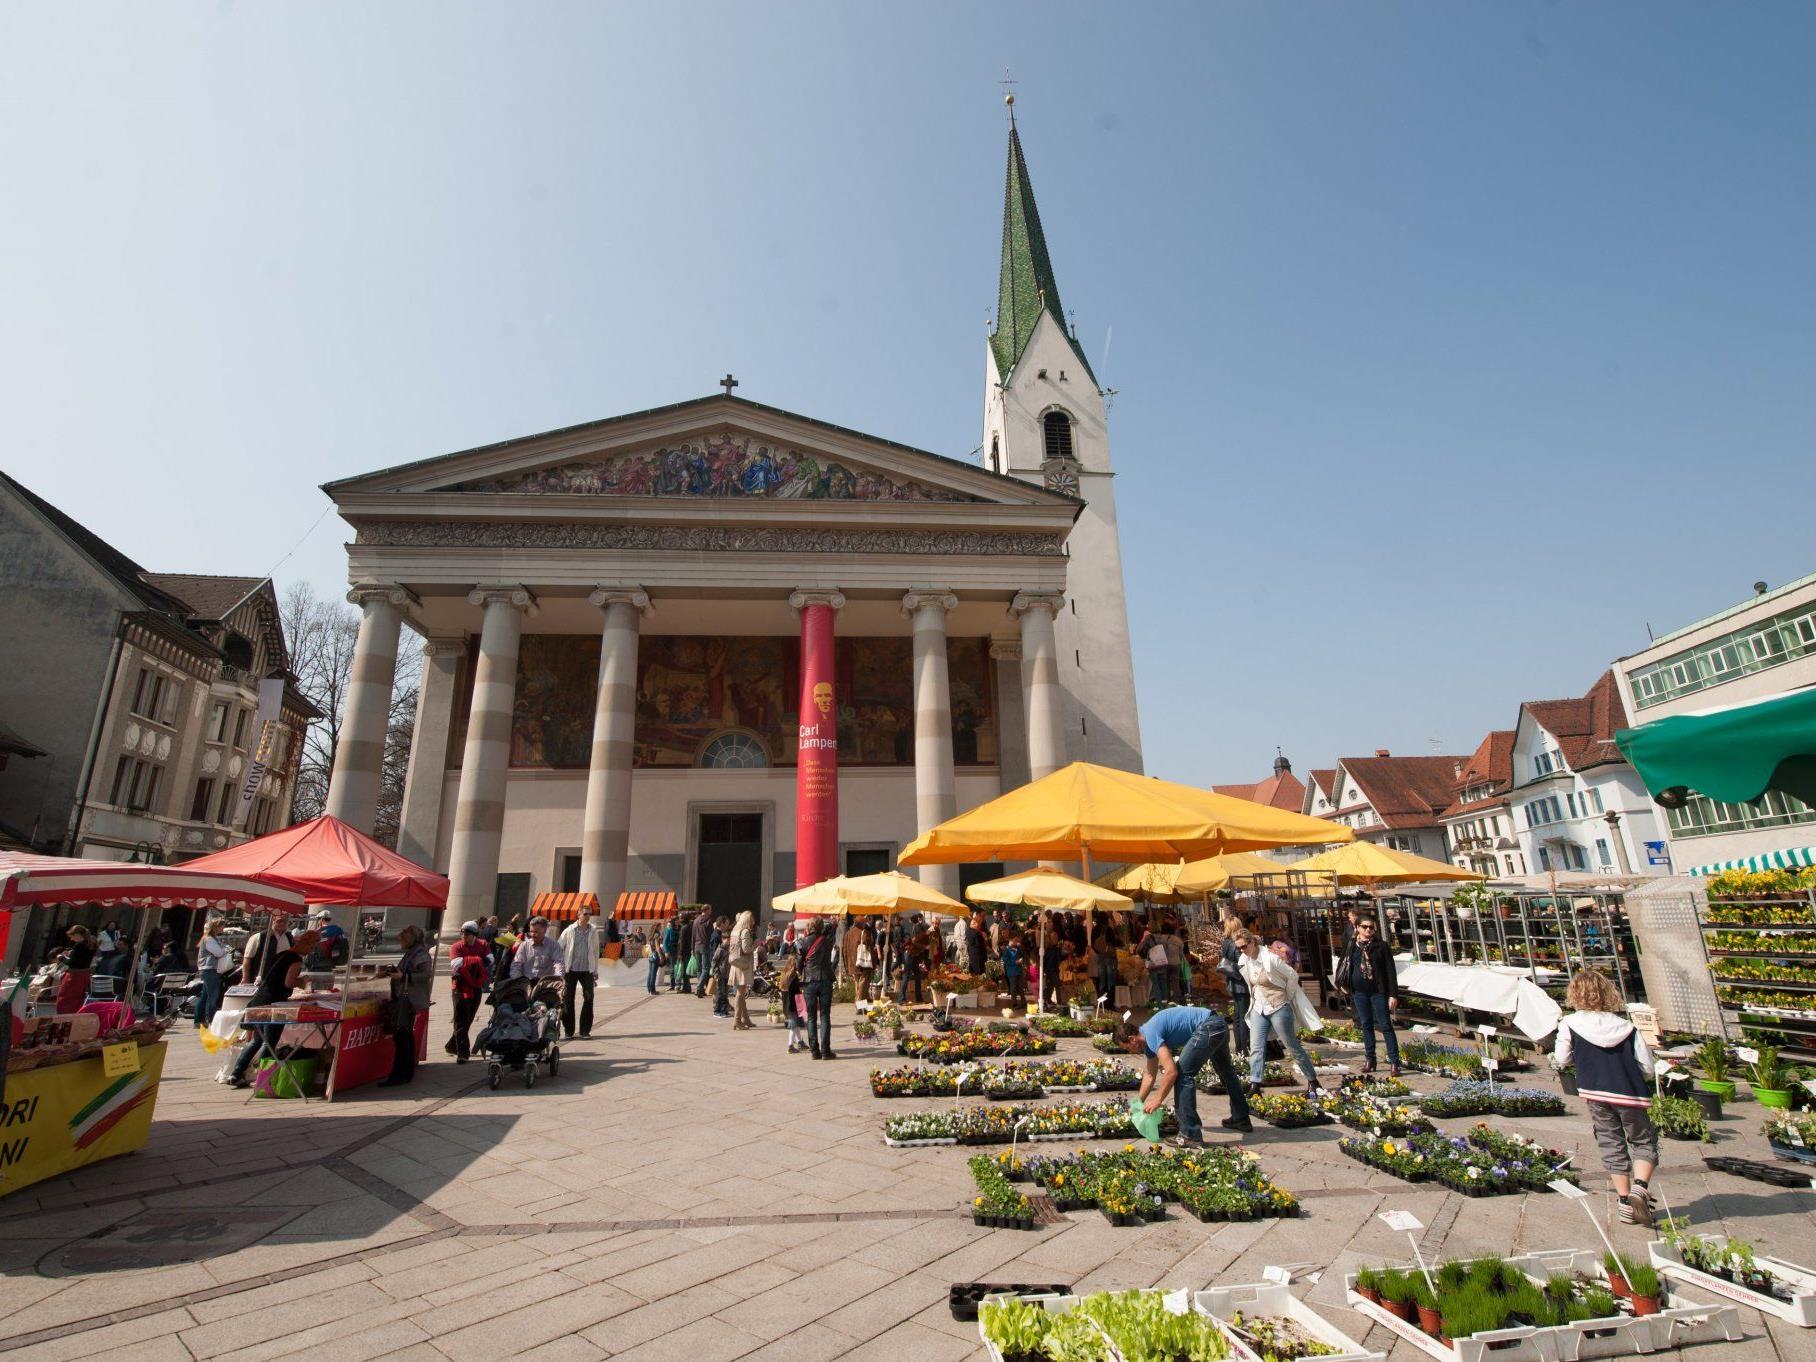 Jede Menge los am Samstag beim Markt in Dornbirn